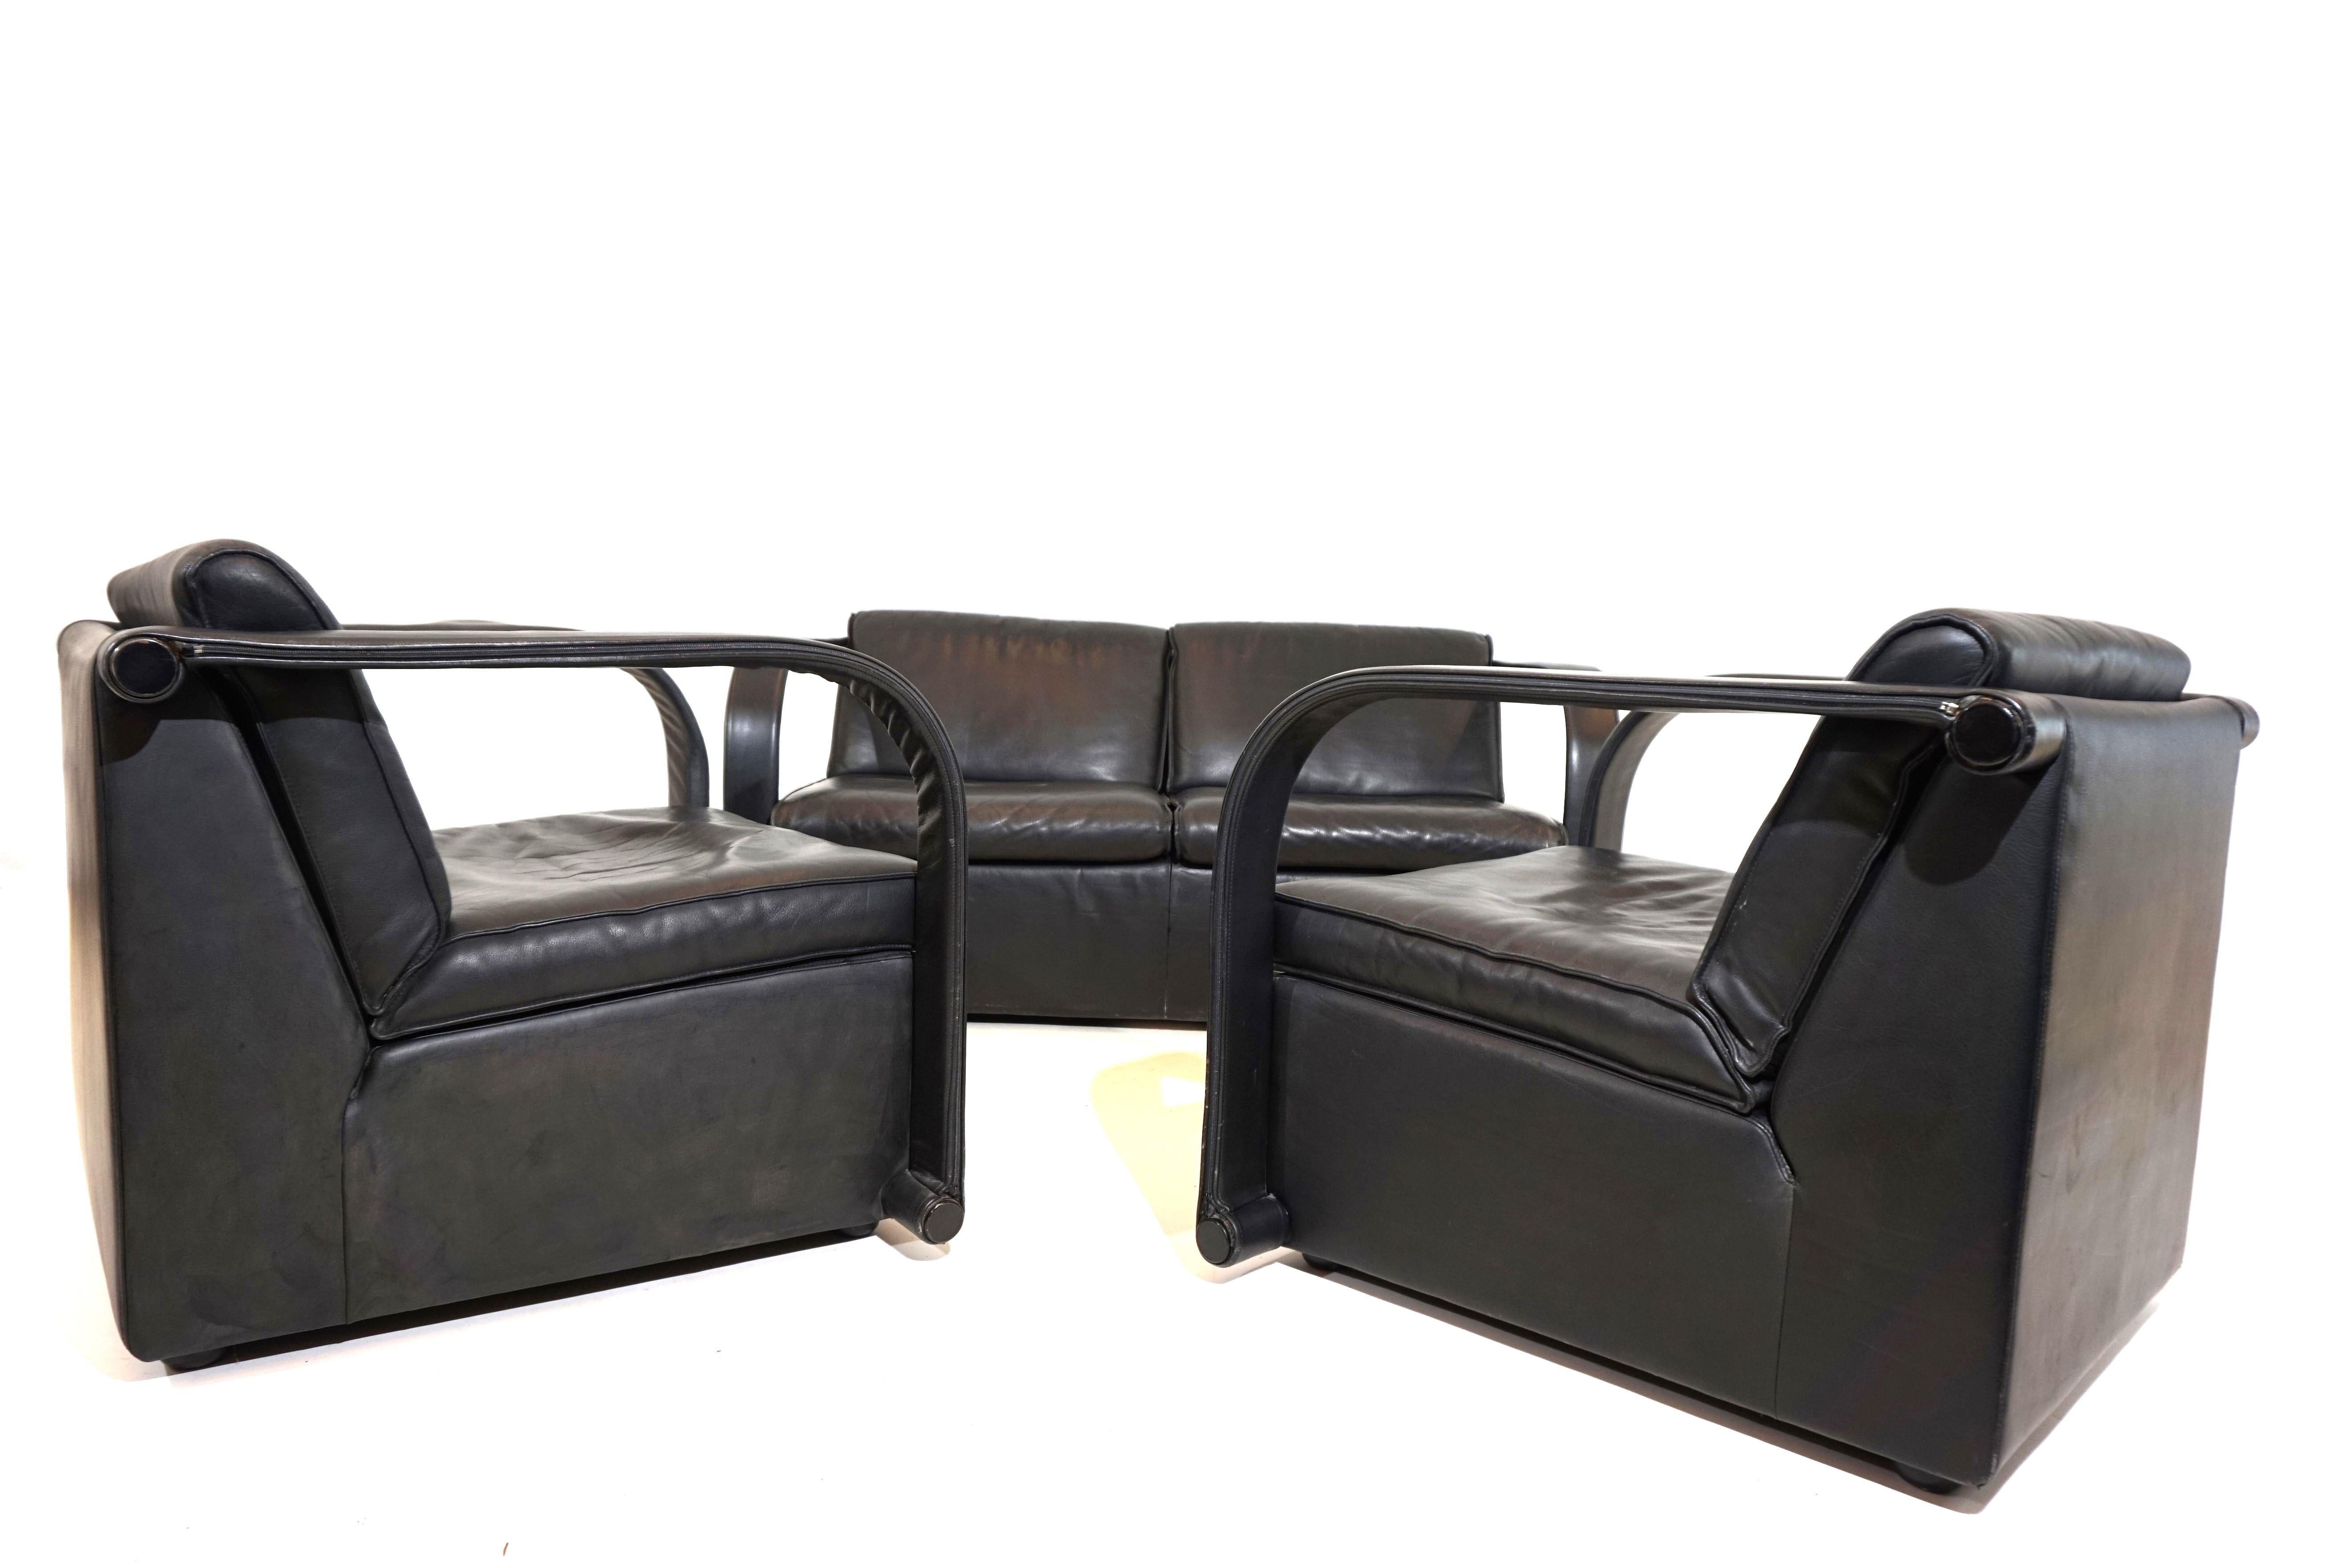 Die Ledergarnitur Arconas besteht aus einem 2-sitzigen Sofa und zwei Sesseln. Das dicke schwarze Leder ist in sehr gutem Zustand mit minimalen Gebrauchsspuren. Die Rücken- und Sitzkissen sowie die Lederbezüge an den Armlehnen sind mit einem